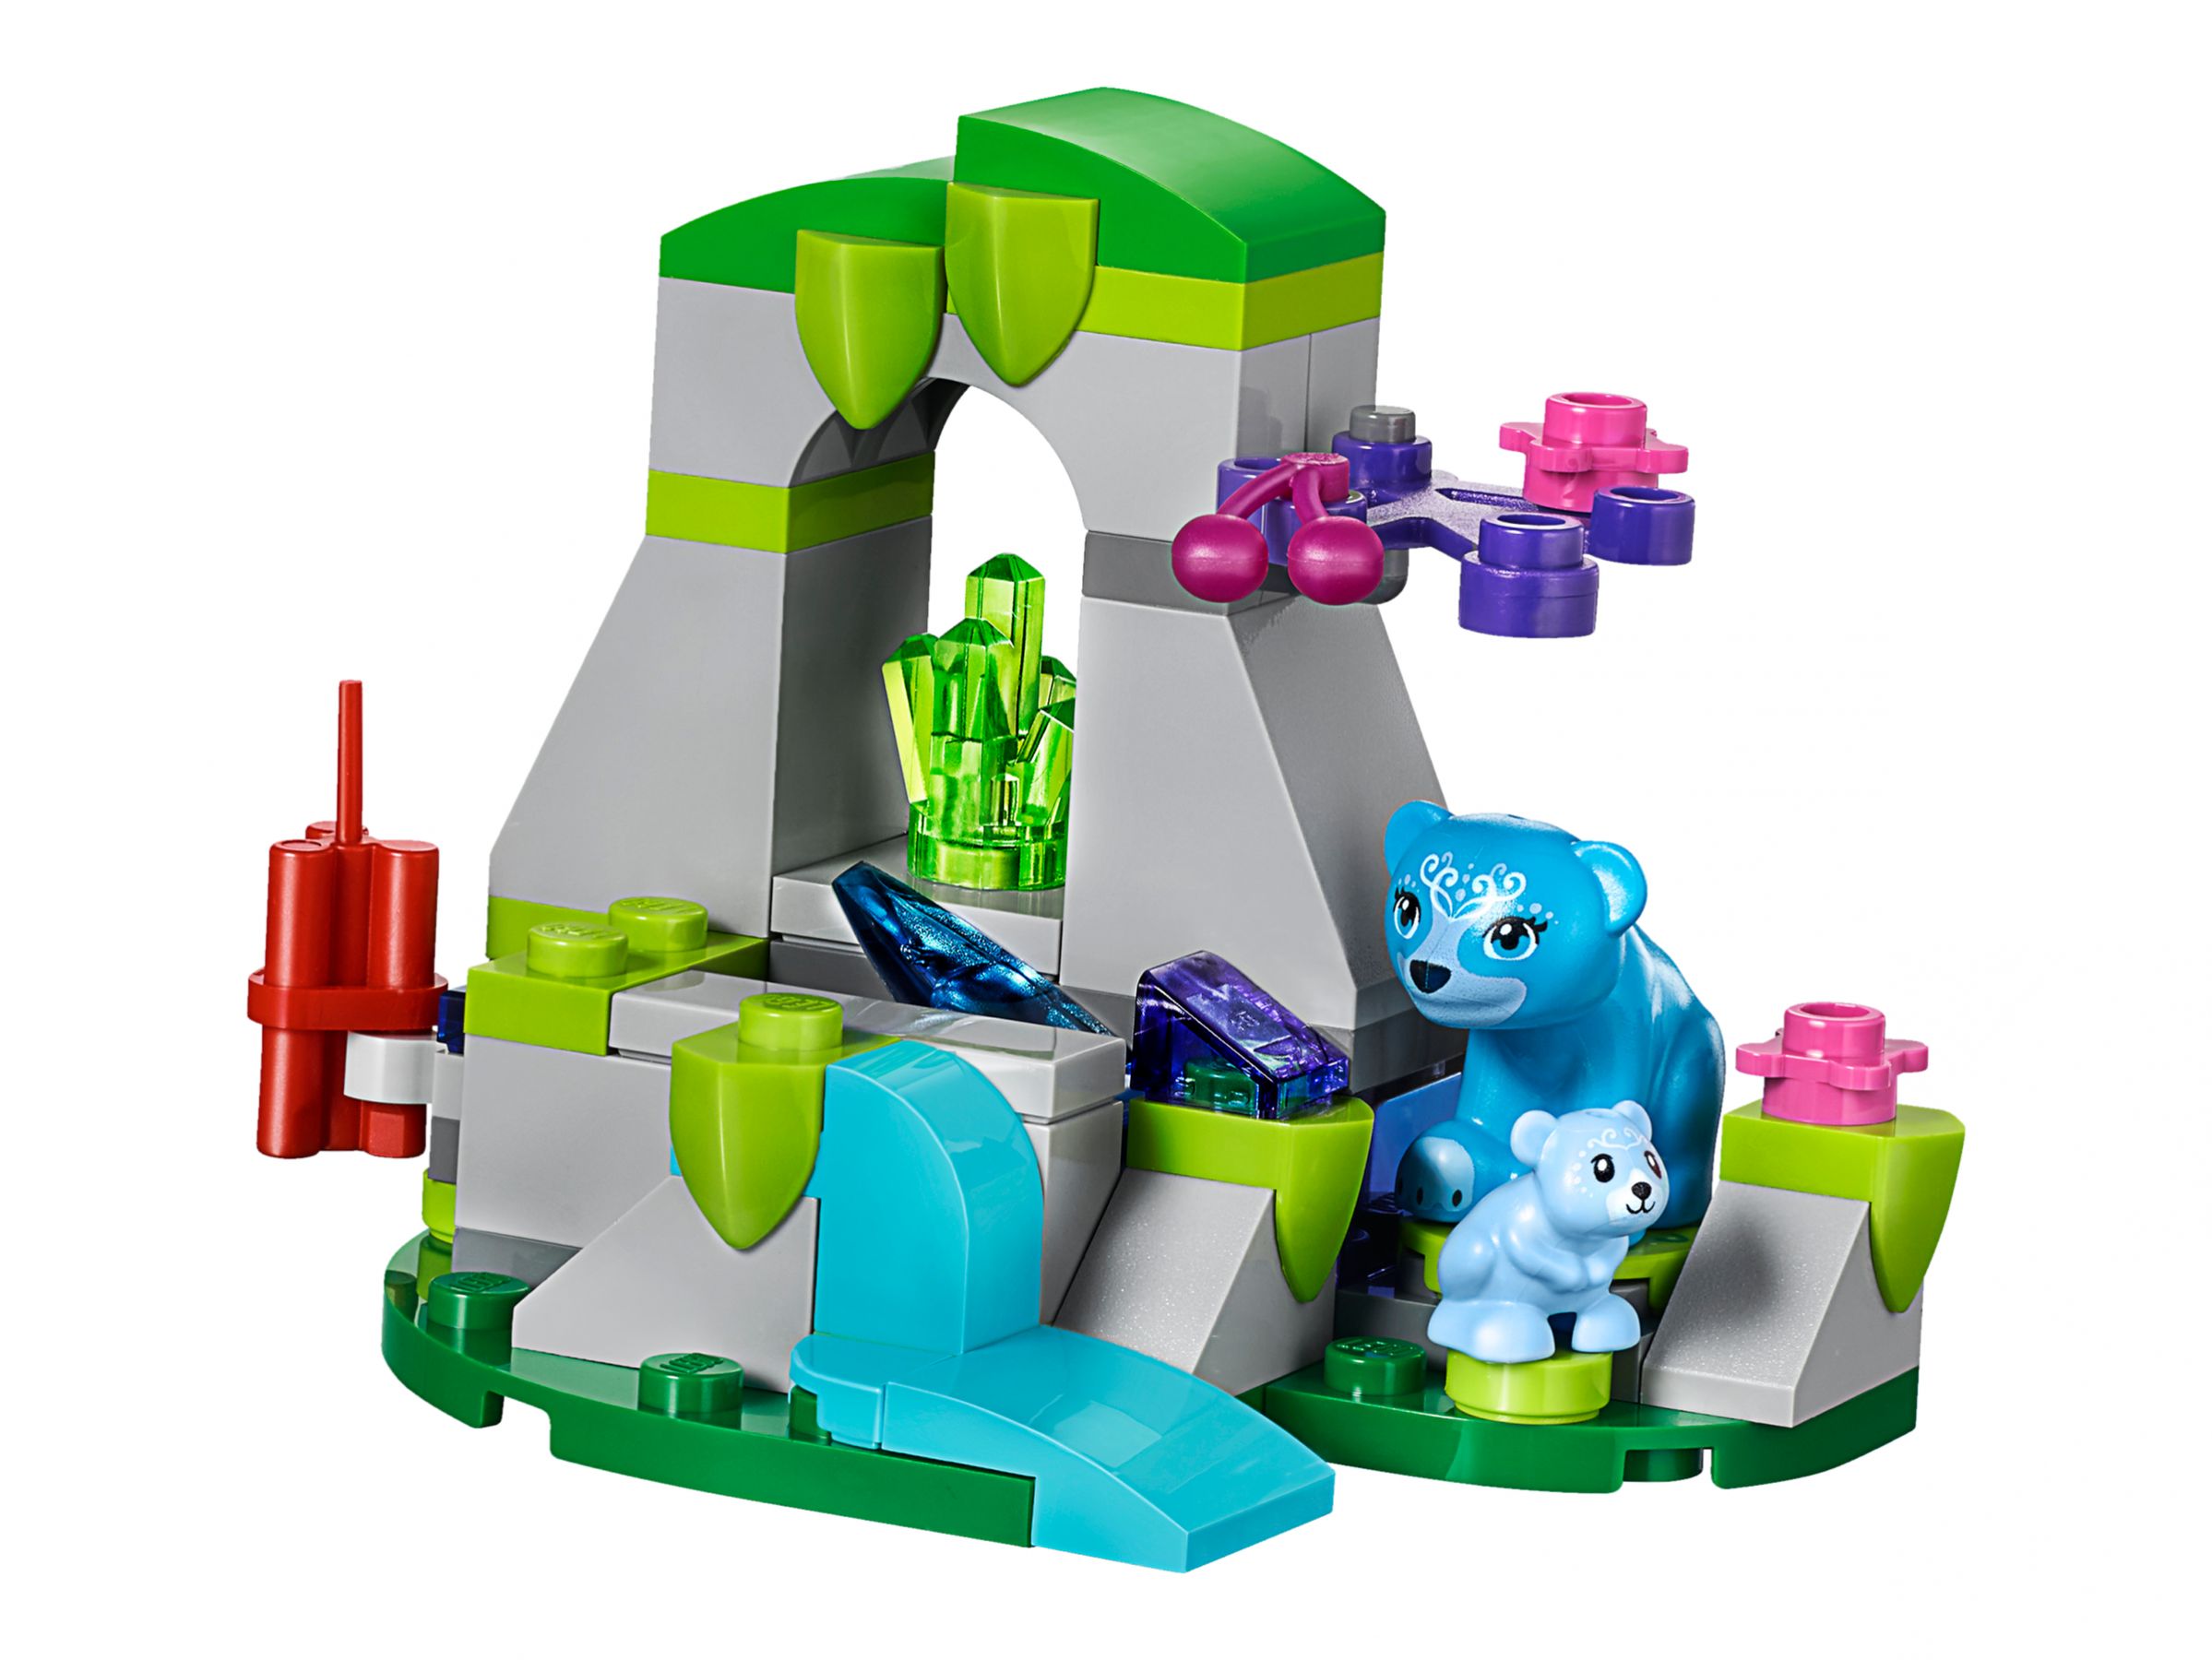 LEGO Elves 41183 Der böse Drache des Kobold-Königs LEGO_41183_alt2.jpg